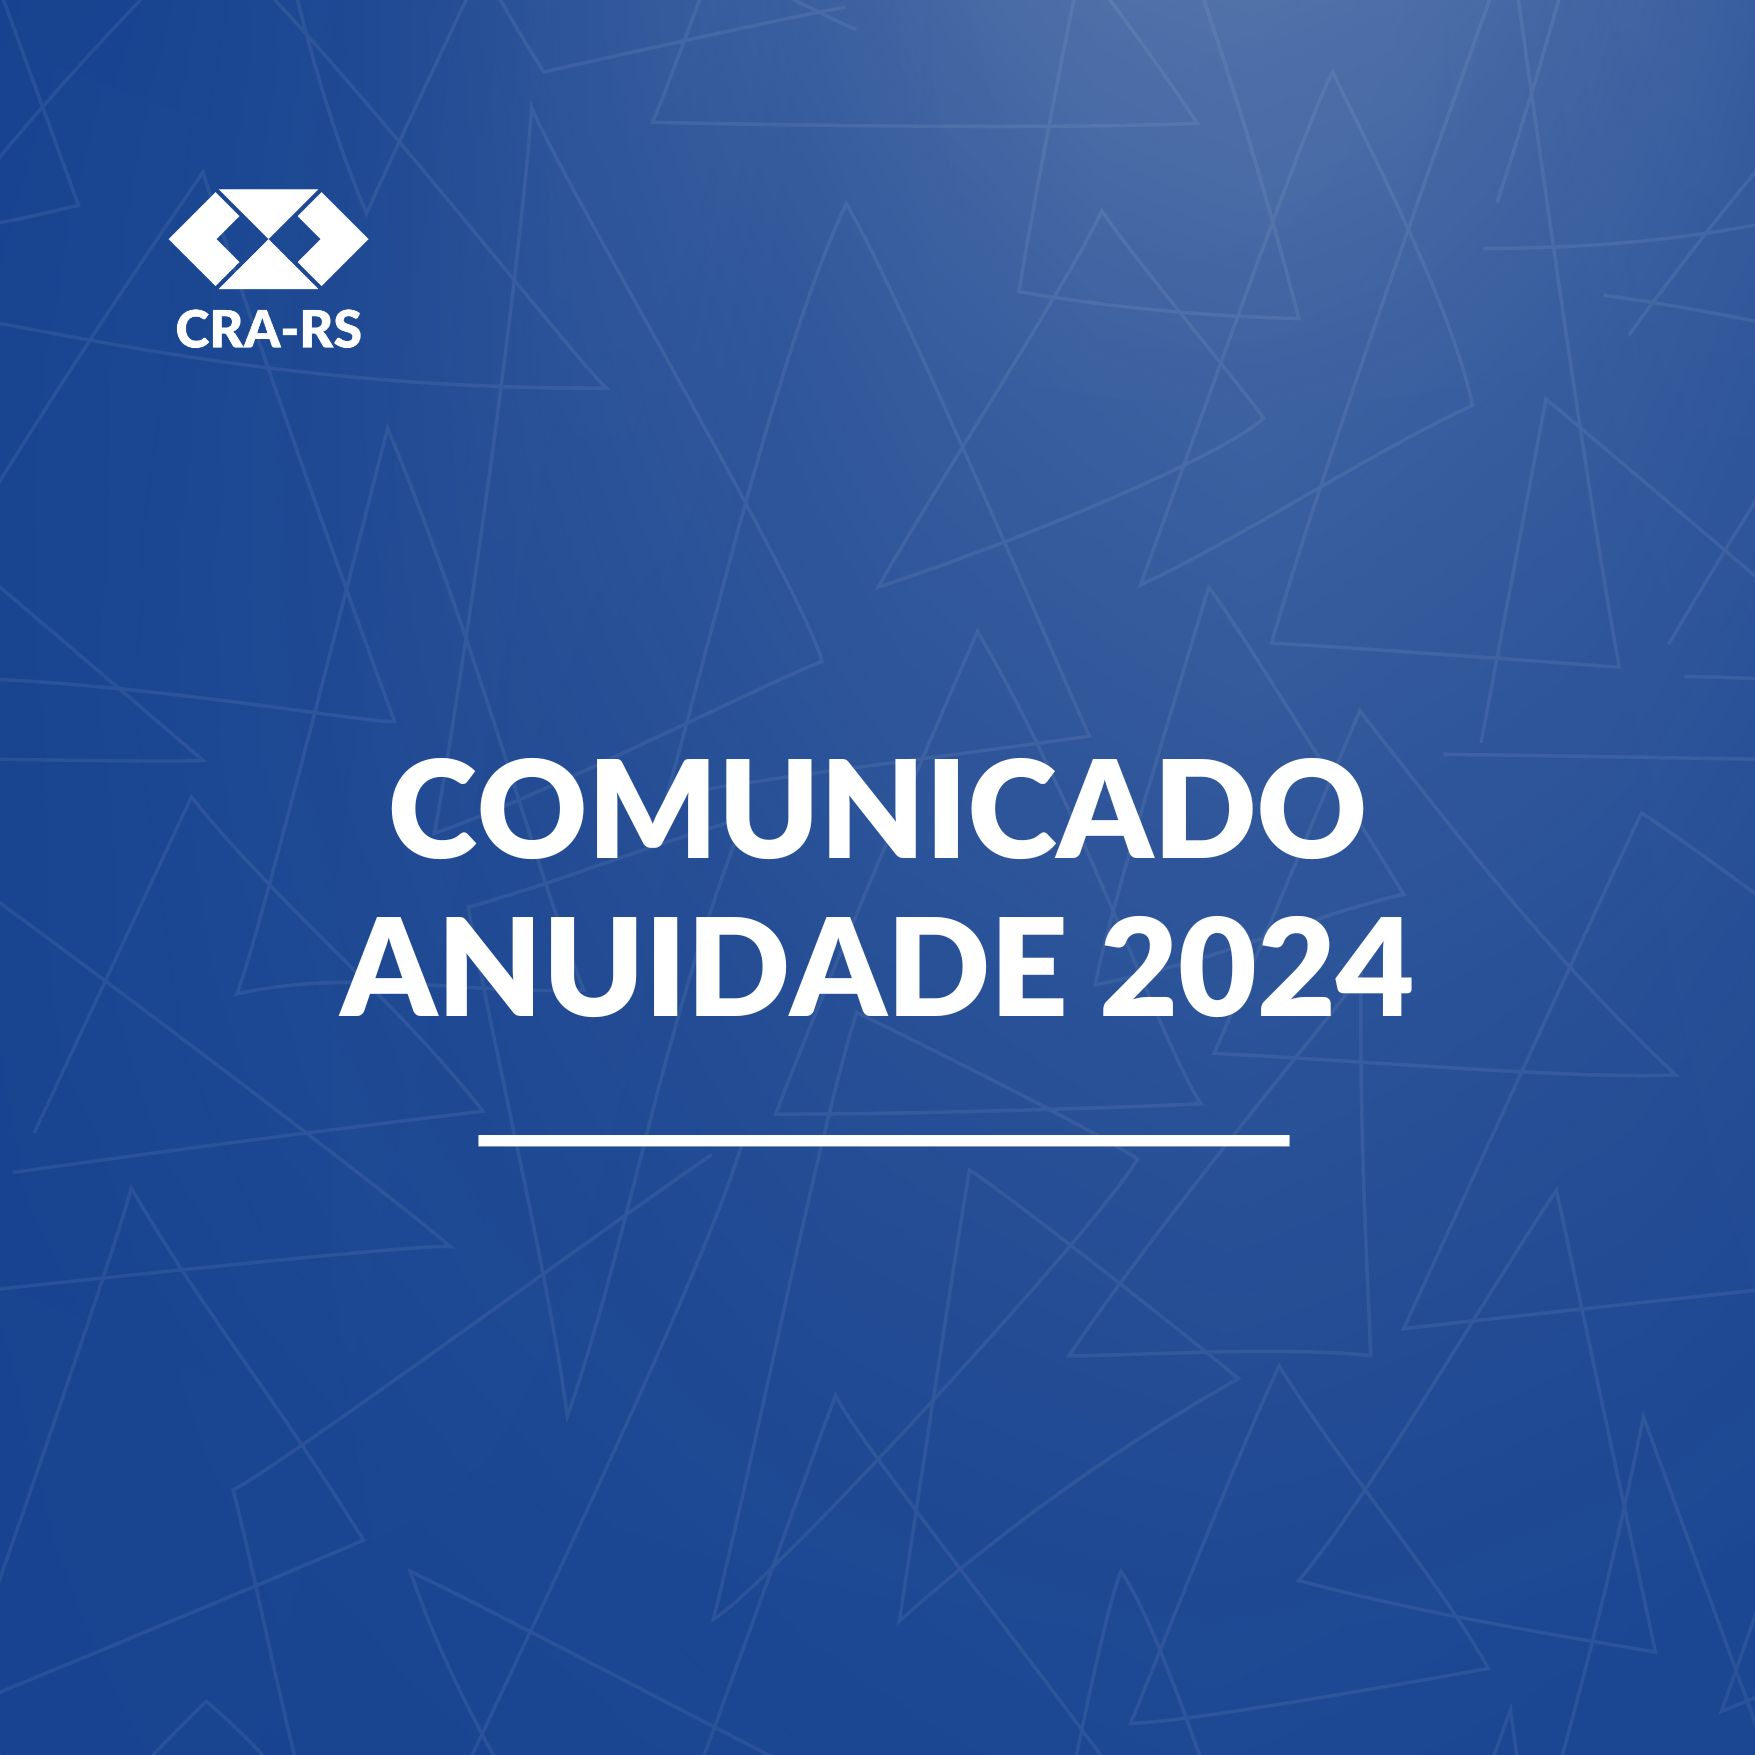 COMUNICADO CRA-RS: pagamento de boletos referentes à anuidade 2024